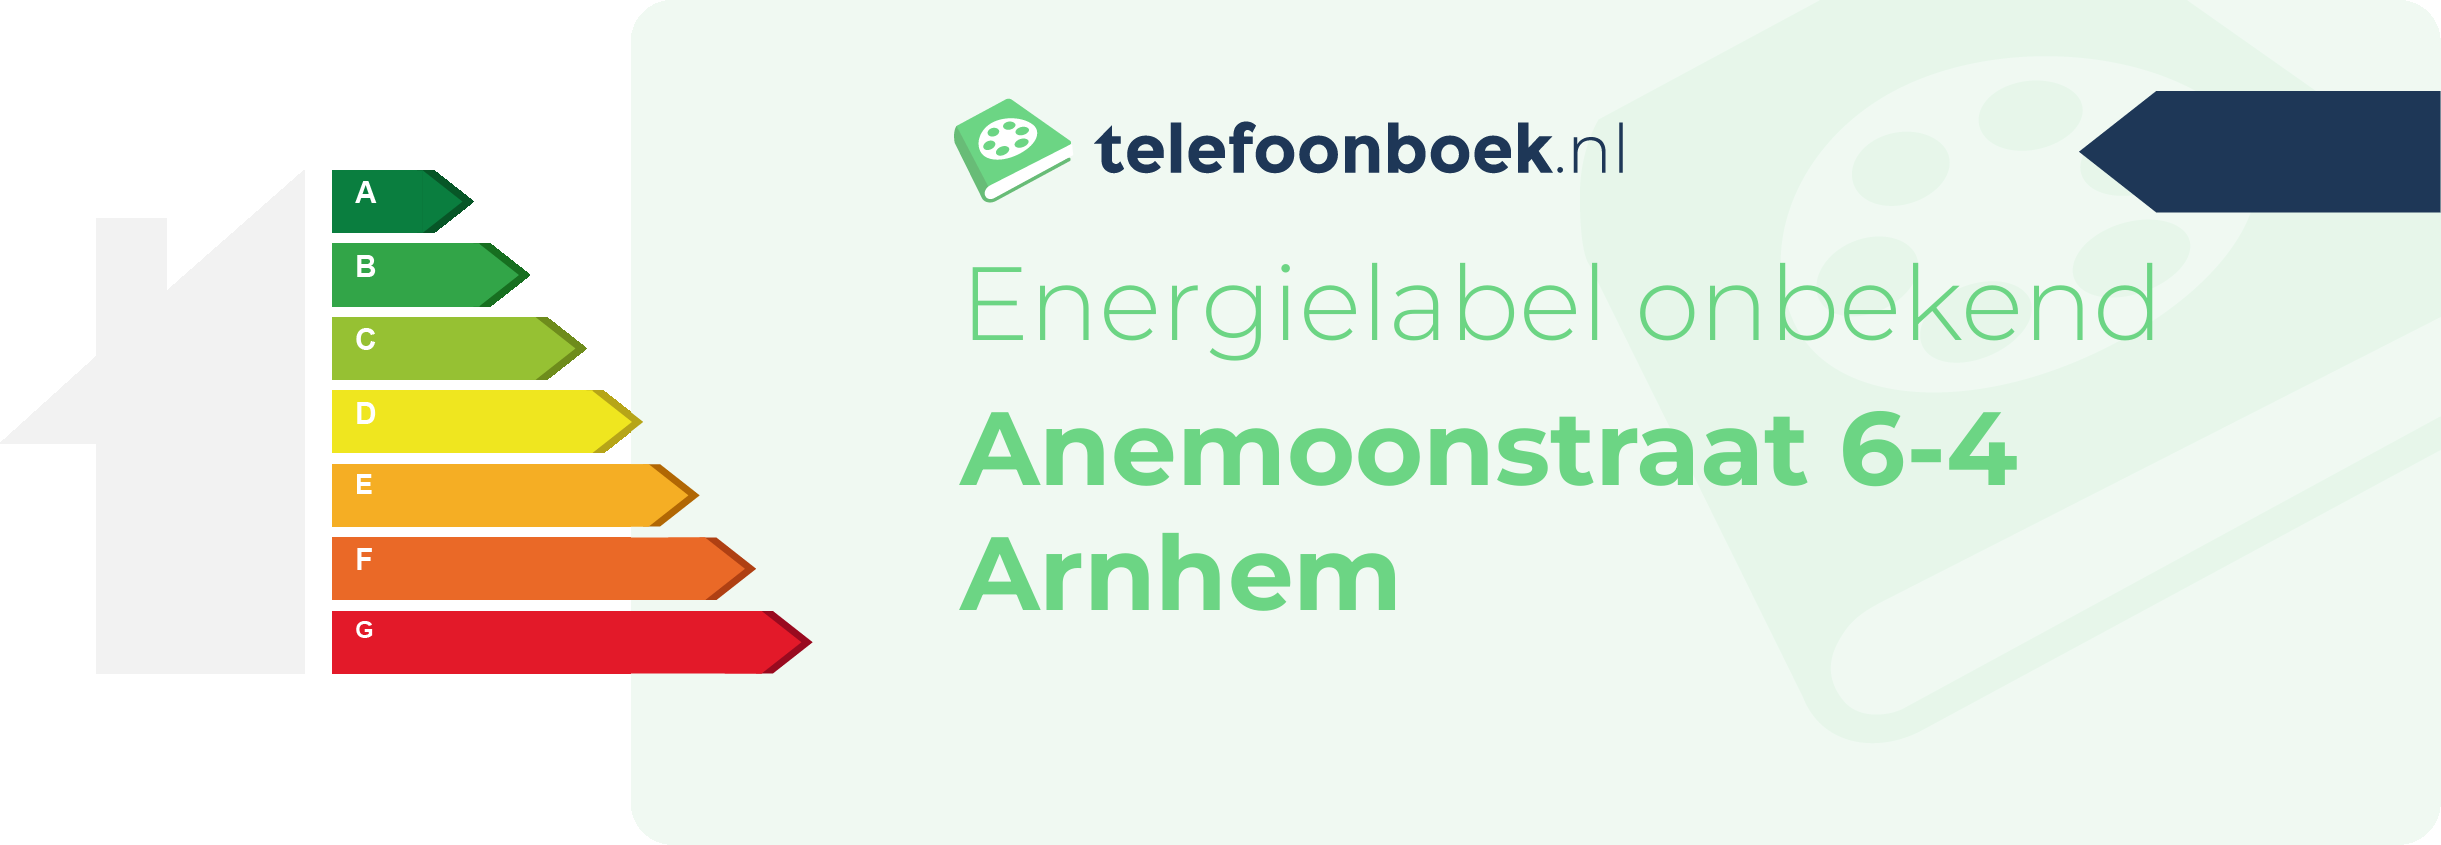 Energielabel Anemoonstraat 6-4 Arnhem